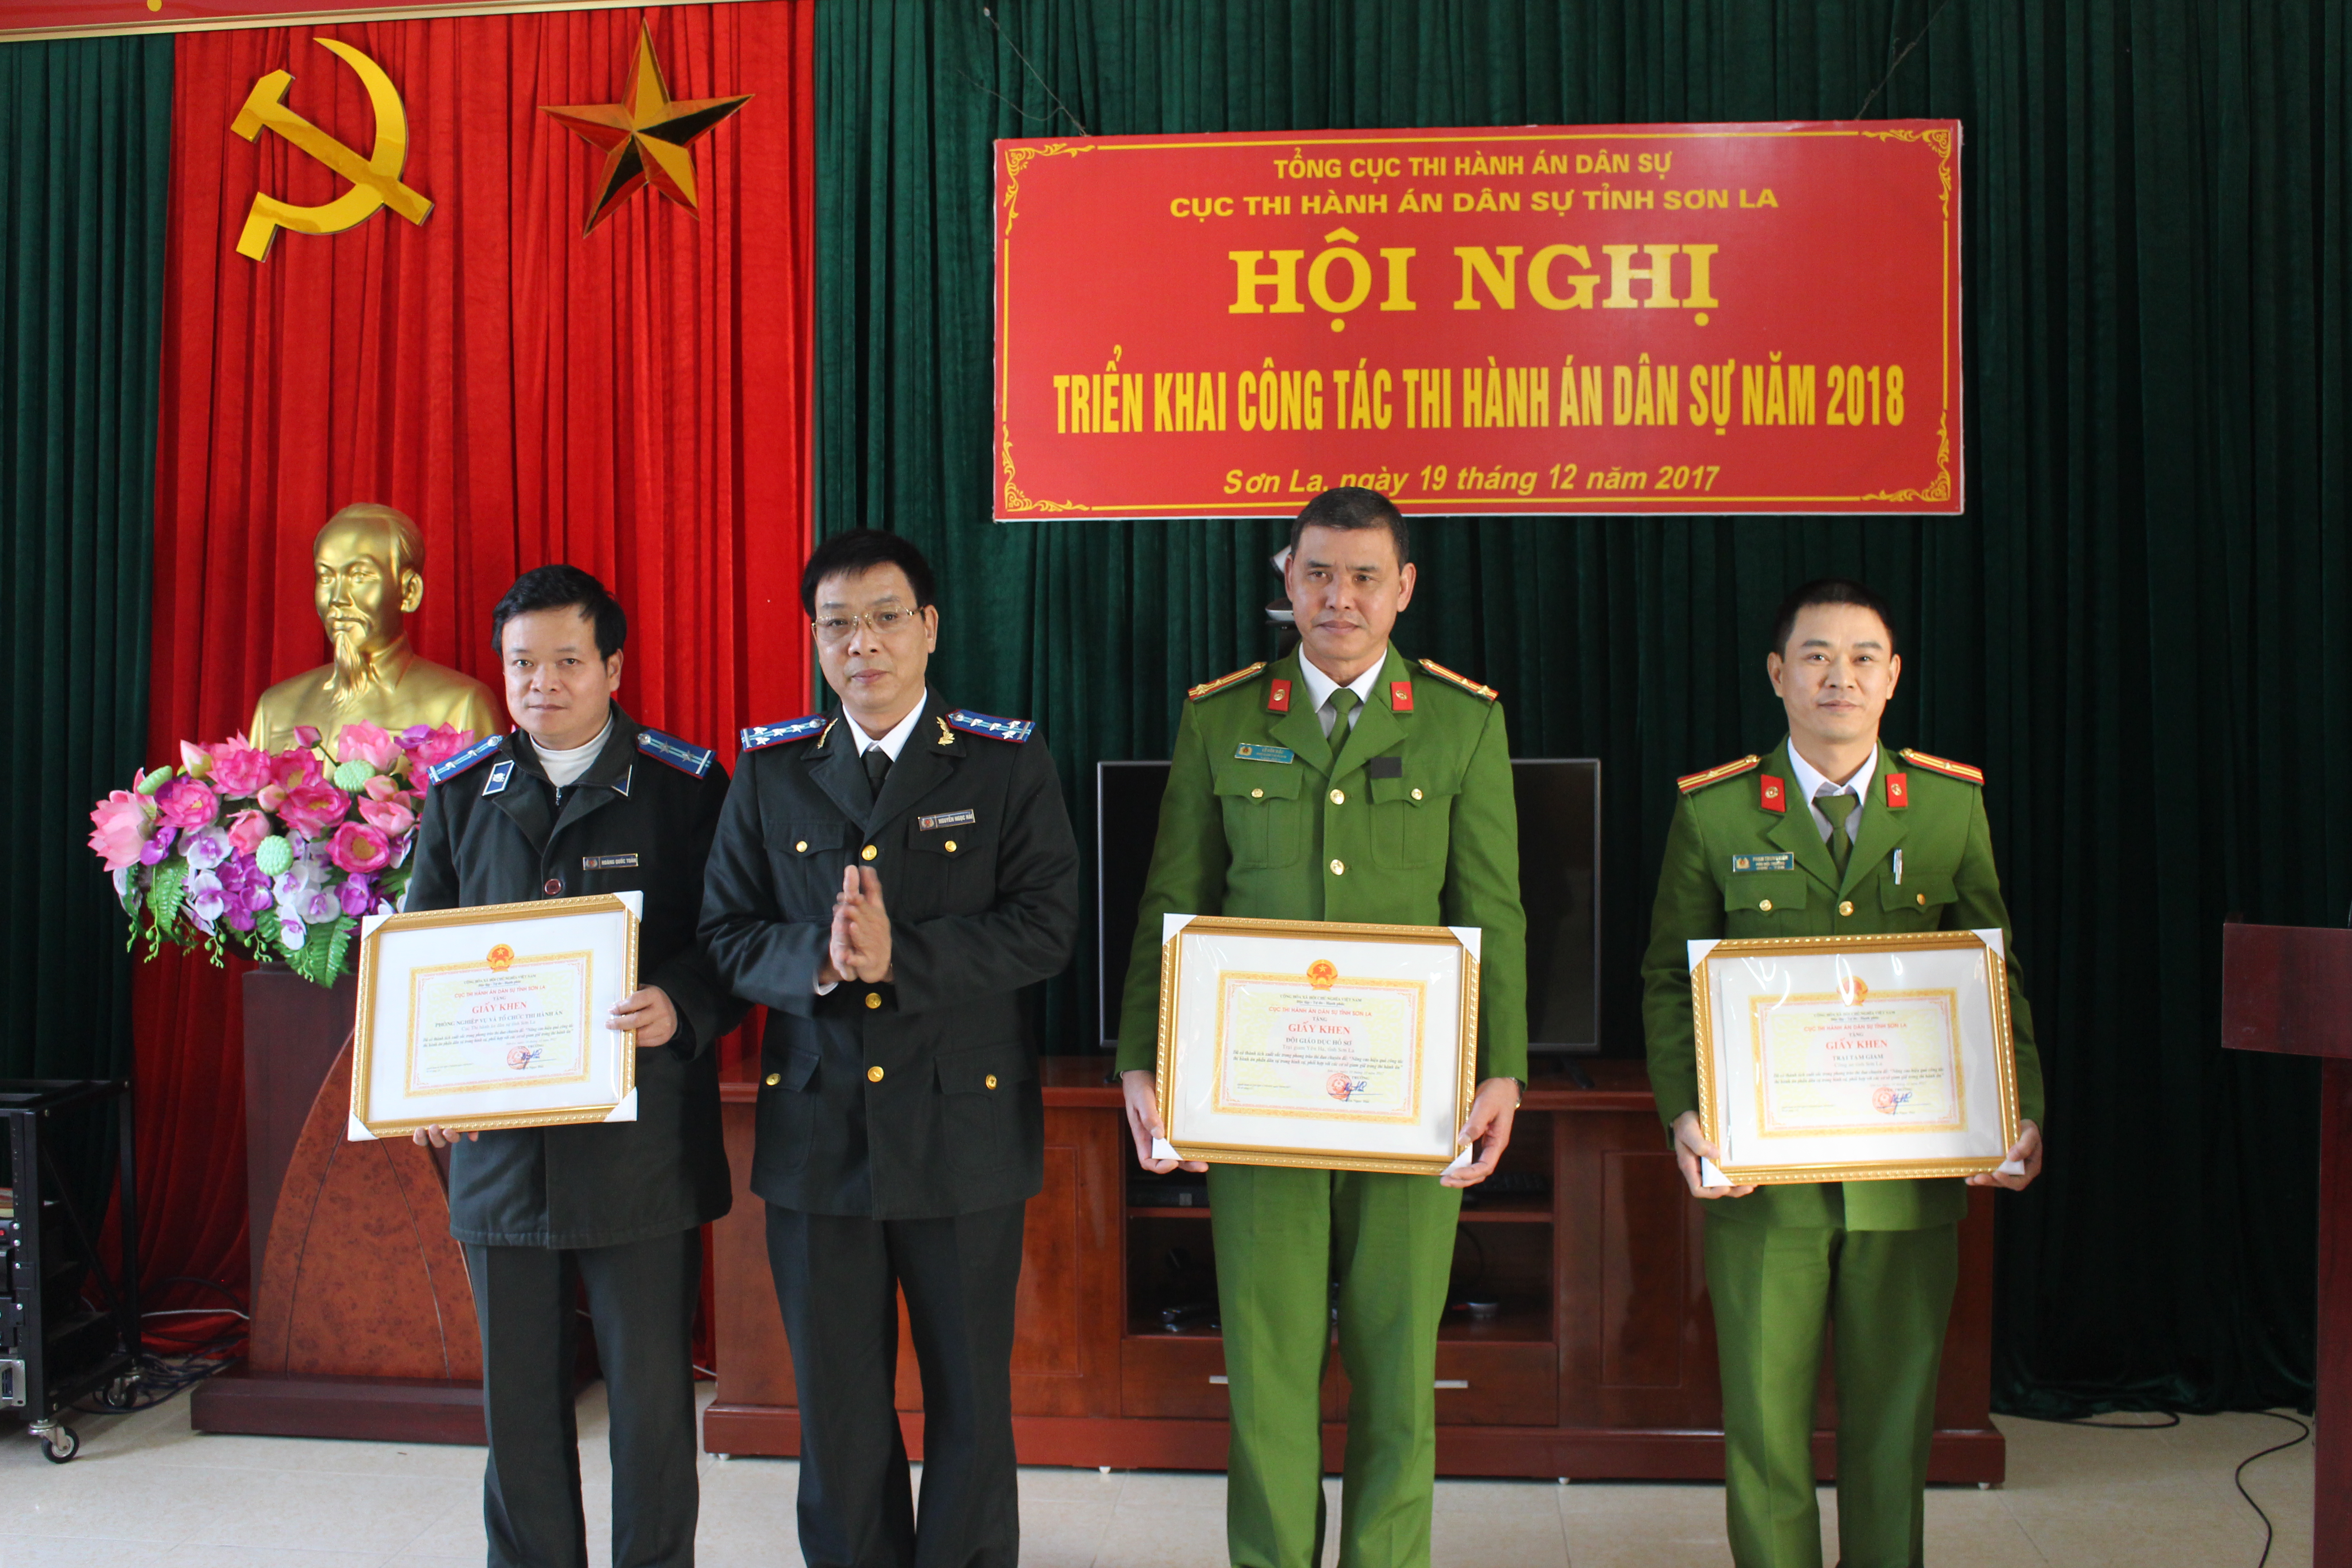 Cục Thi hành án dân sự tỉnh Sơn La tổ chức Hội nghị  triển khai công tác thi hành án dân sự năm 2018